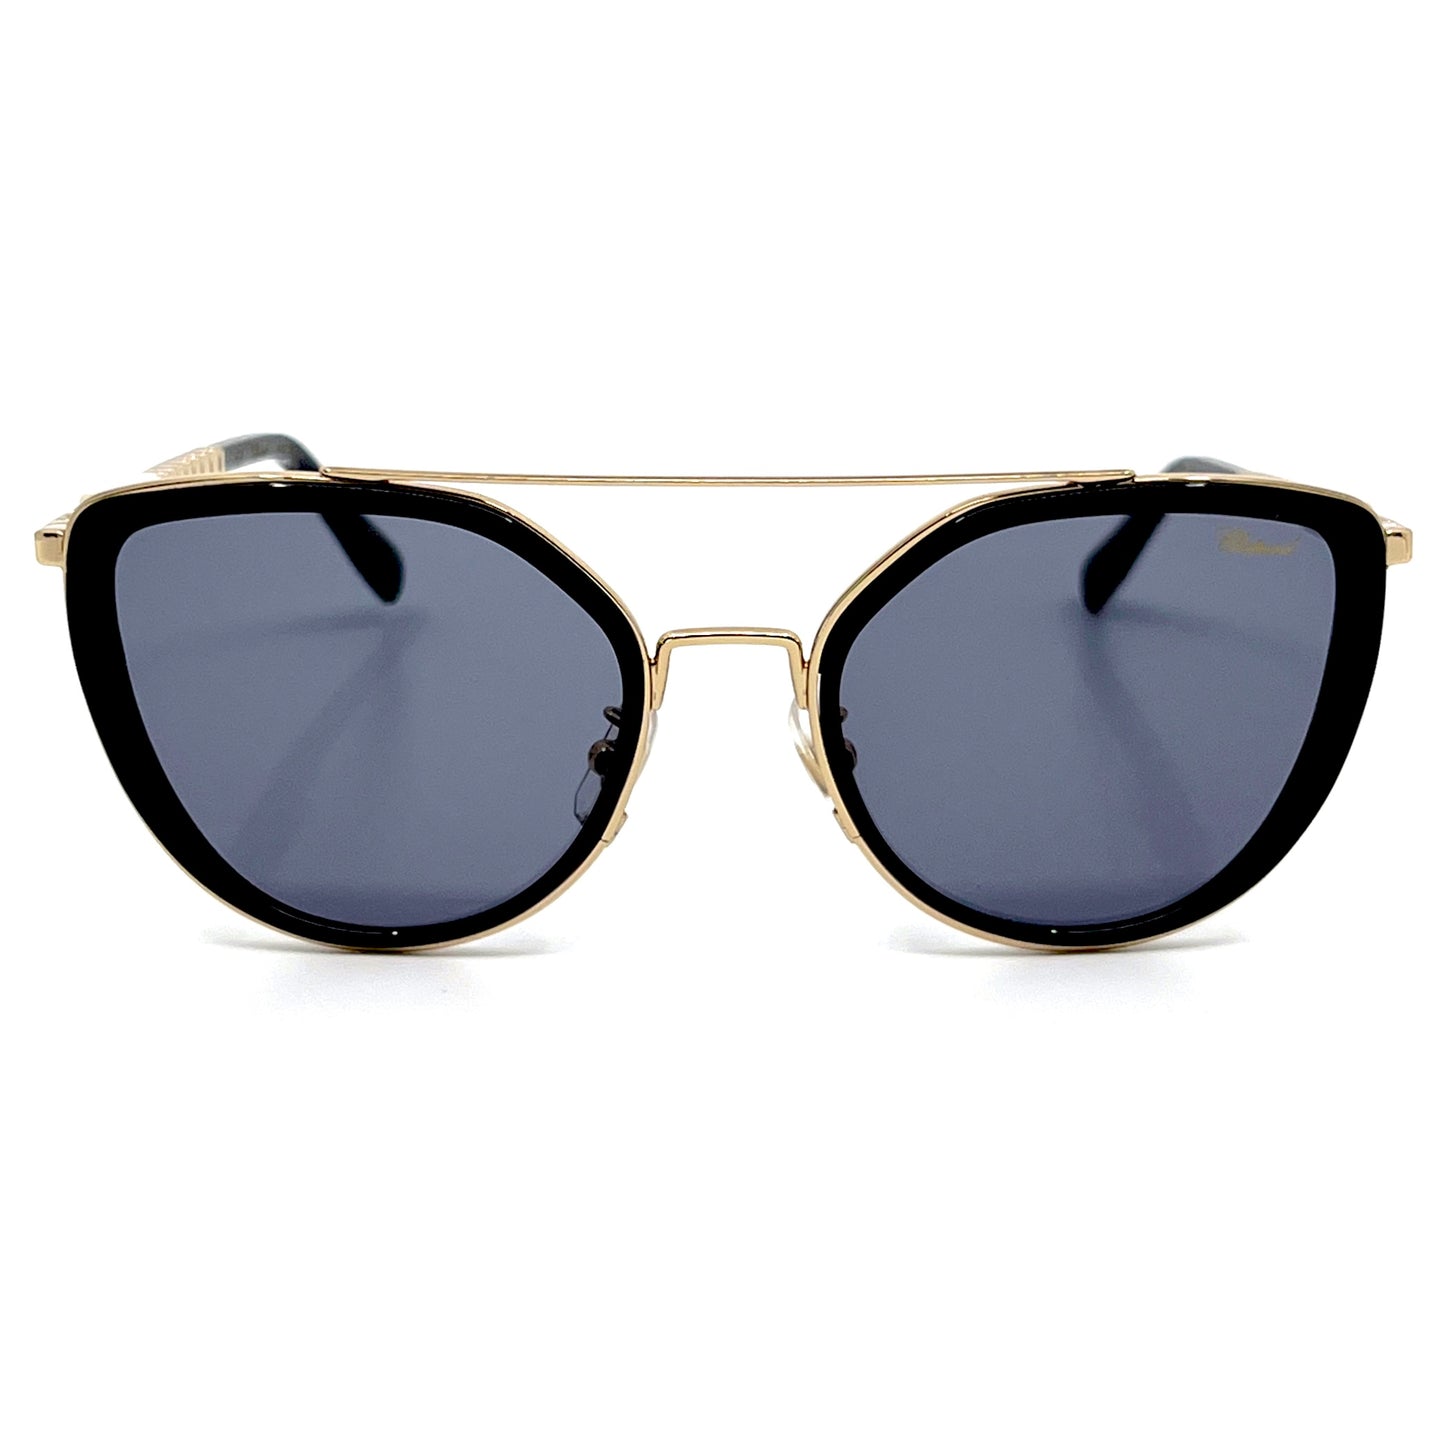 CHOPARD Sunglasses SCHC23 300F